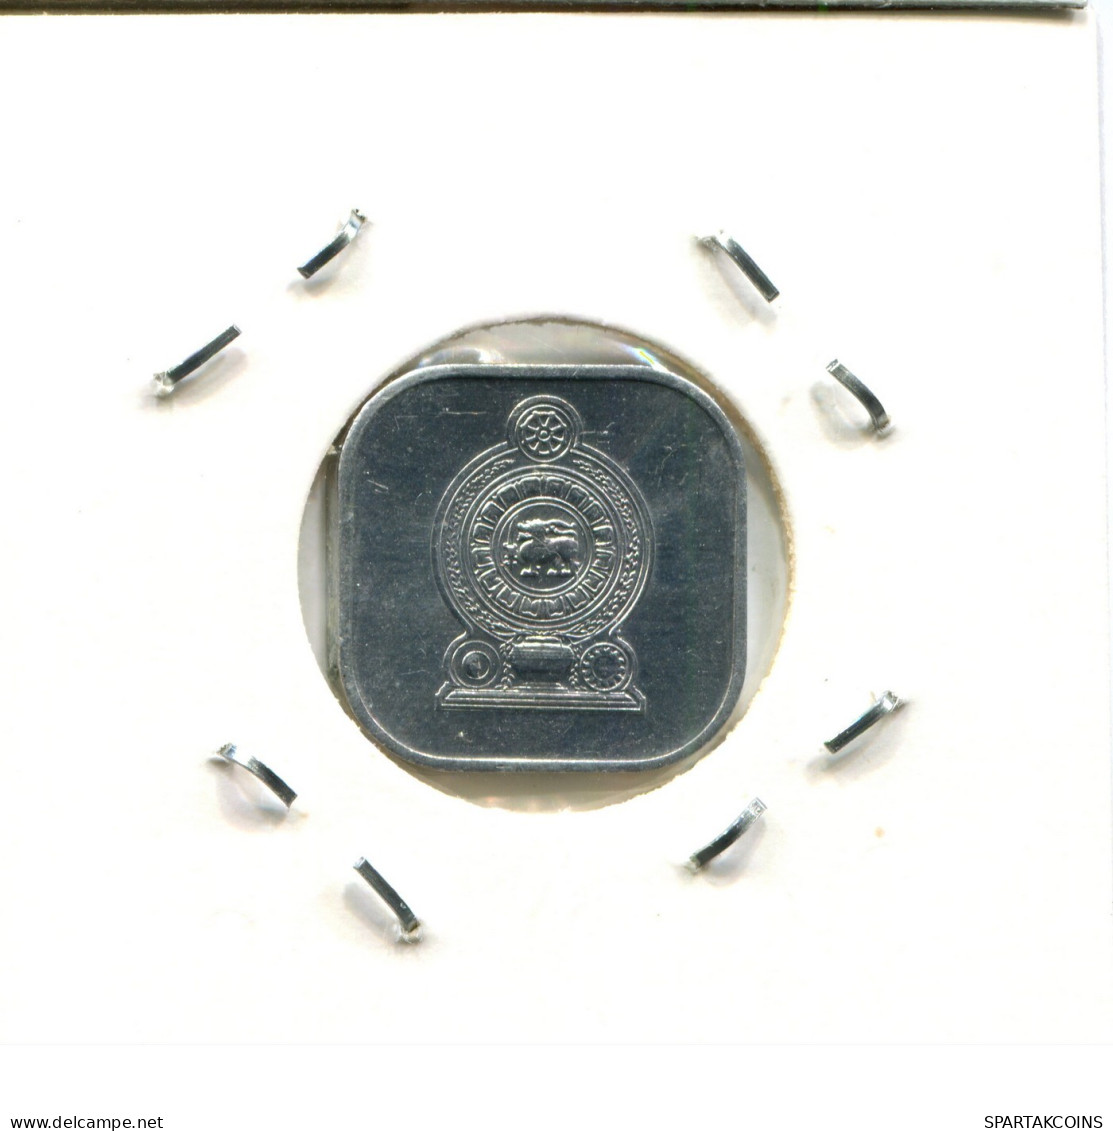 5 CENTS 1978 SRI LANKA Coin #AX141.U.A - Sri Lanka (Ceylon)